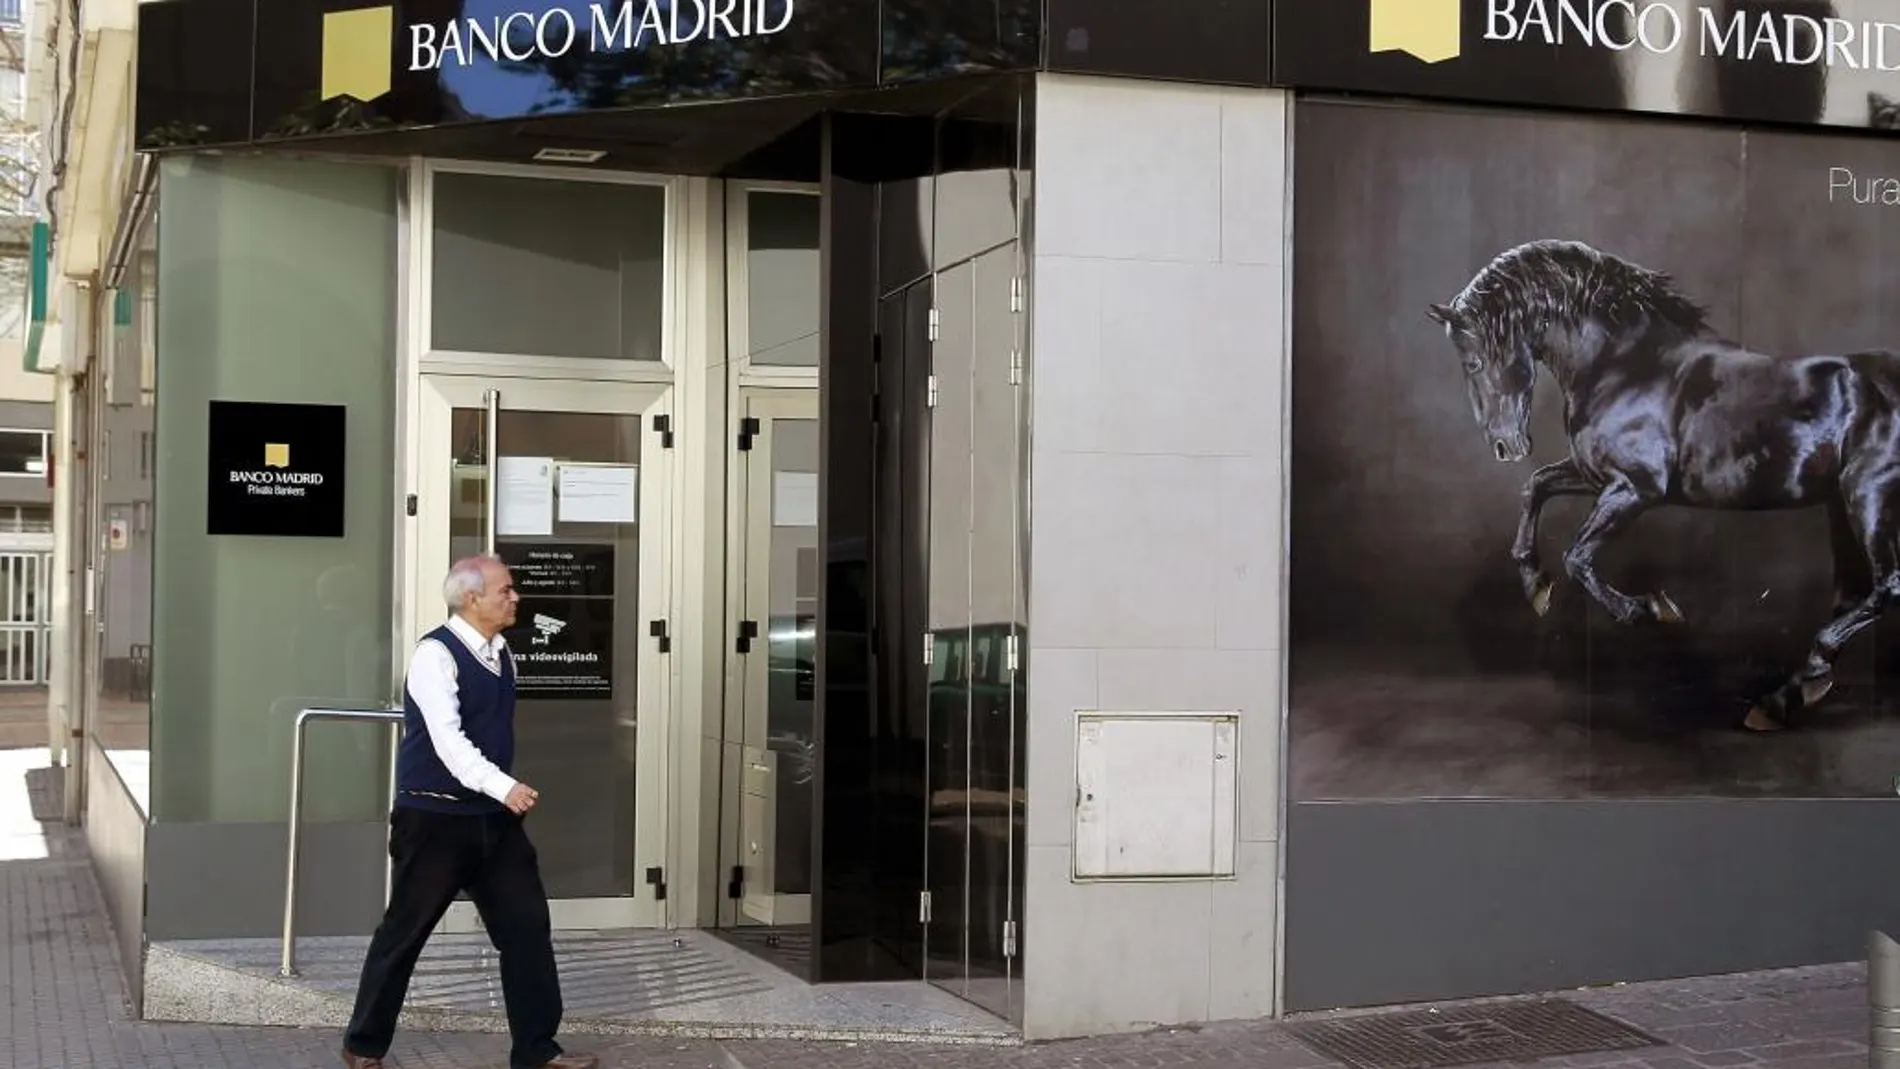 Economía quiere una liquidación exprés para Banco Madrid